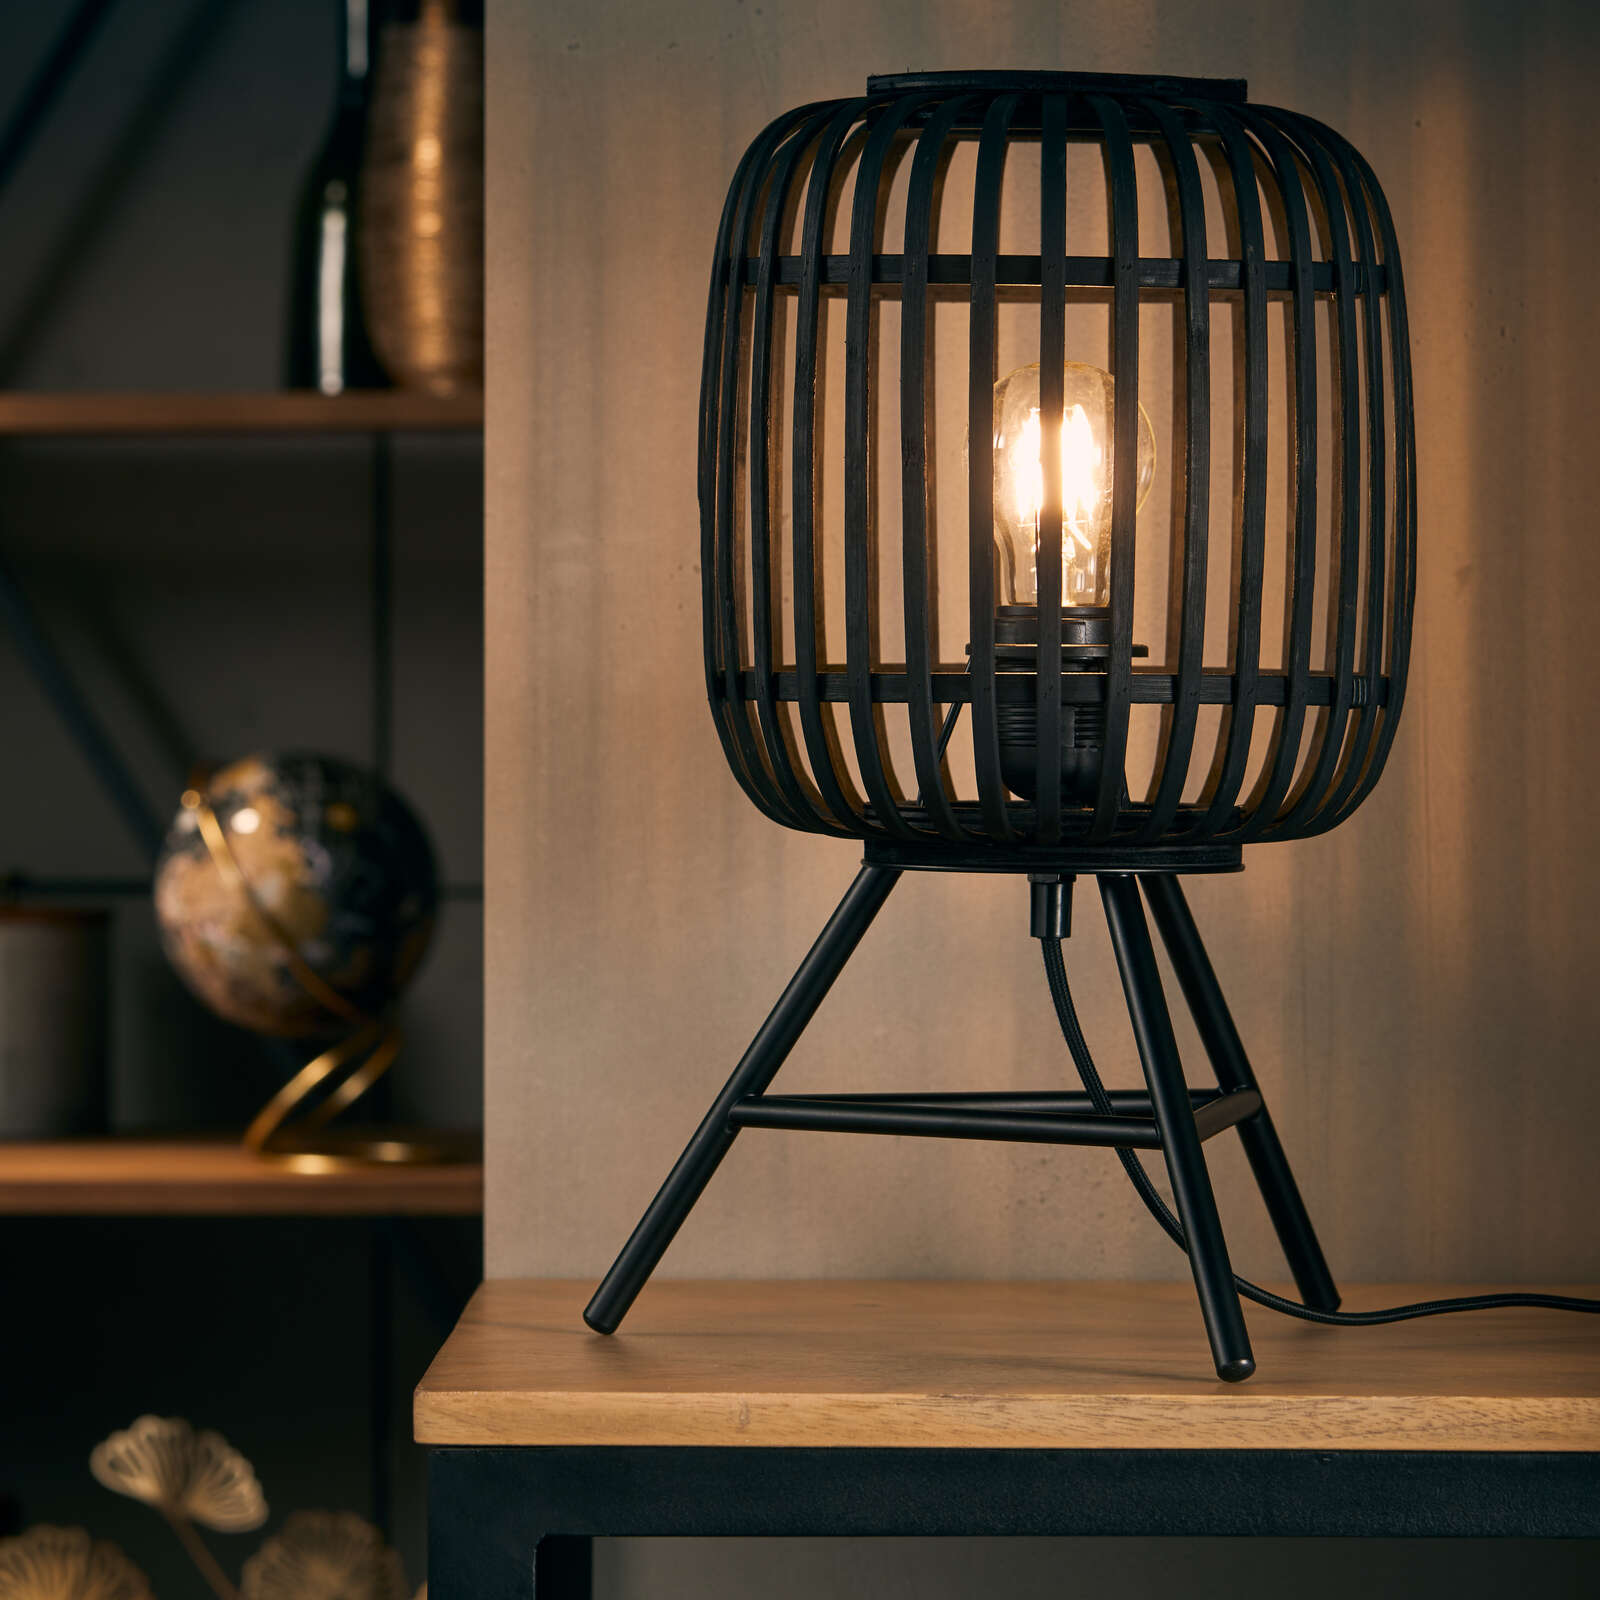             Lámpara de mesa de bambú - Willi 3 - Marrón
        